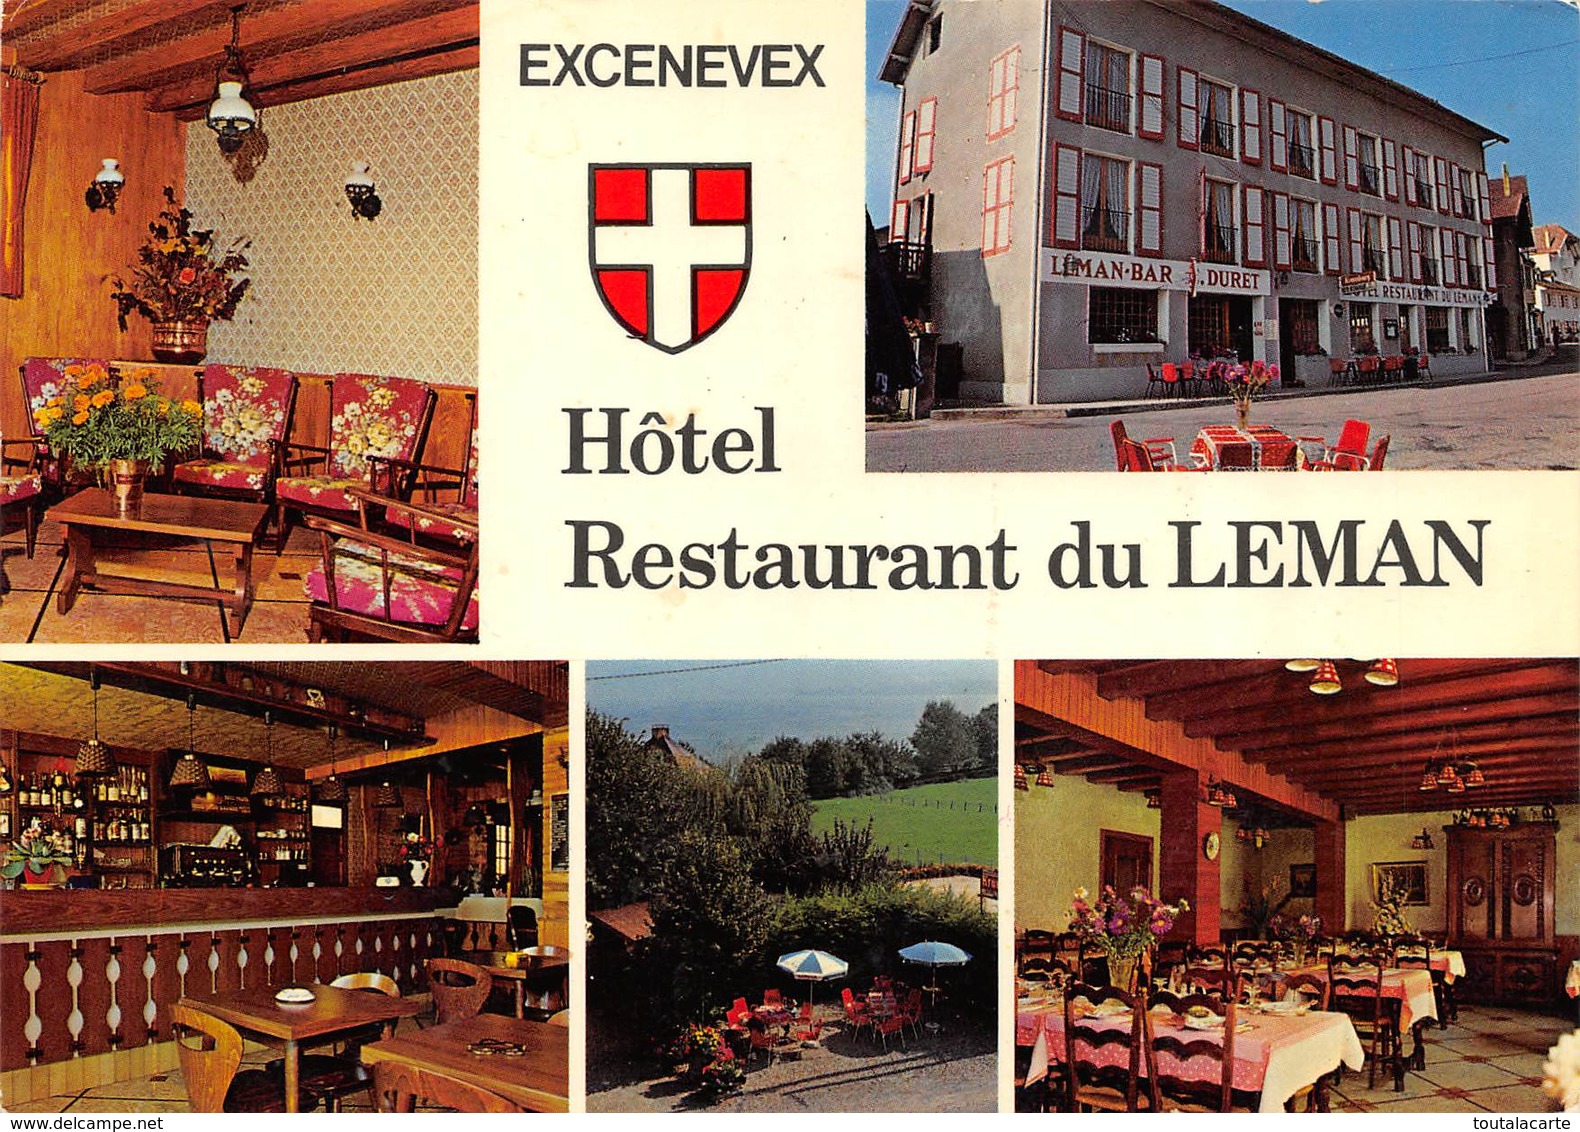 CPSM 74  DOUVAINE HOTEL RESTAURANT DU LEMAN EXCENEVEX    Grand Format 15 X 10,5 - Douvaine